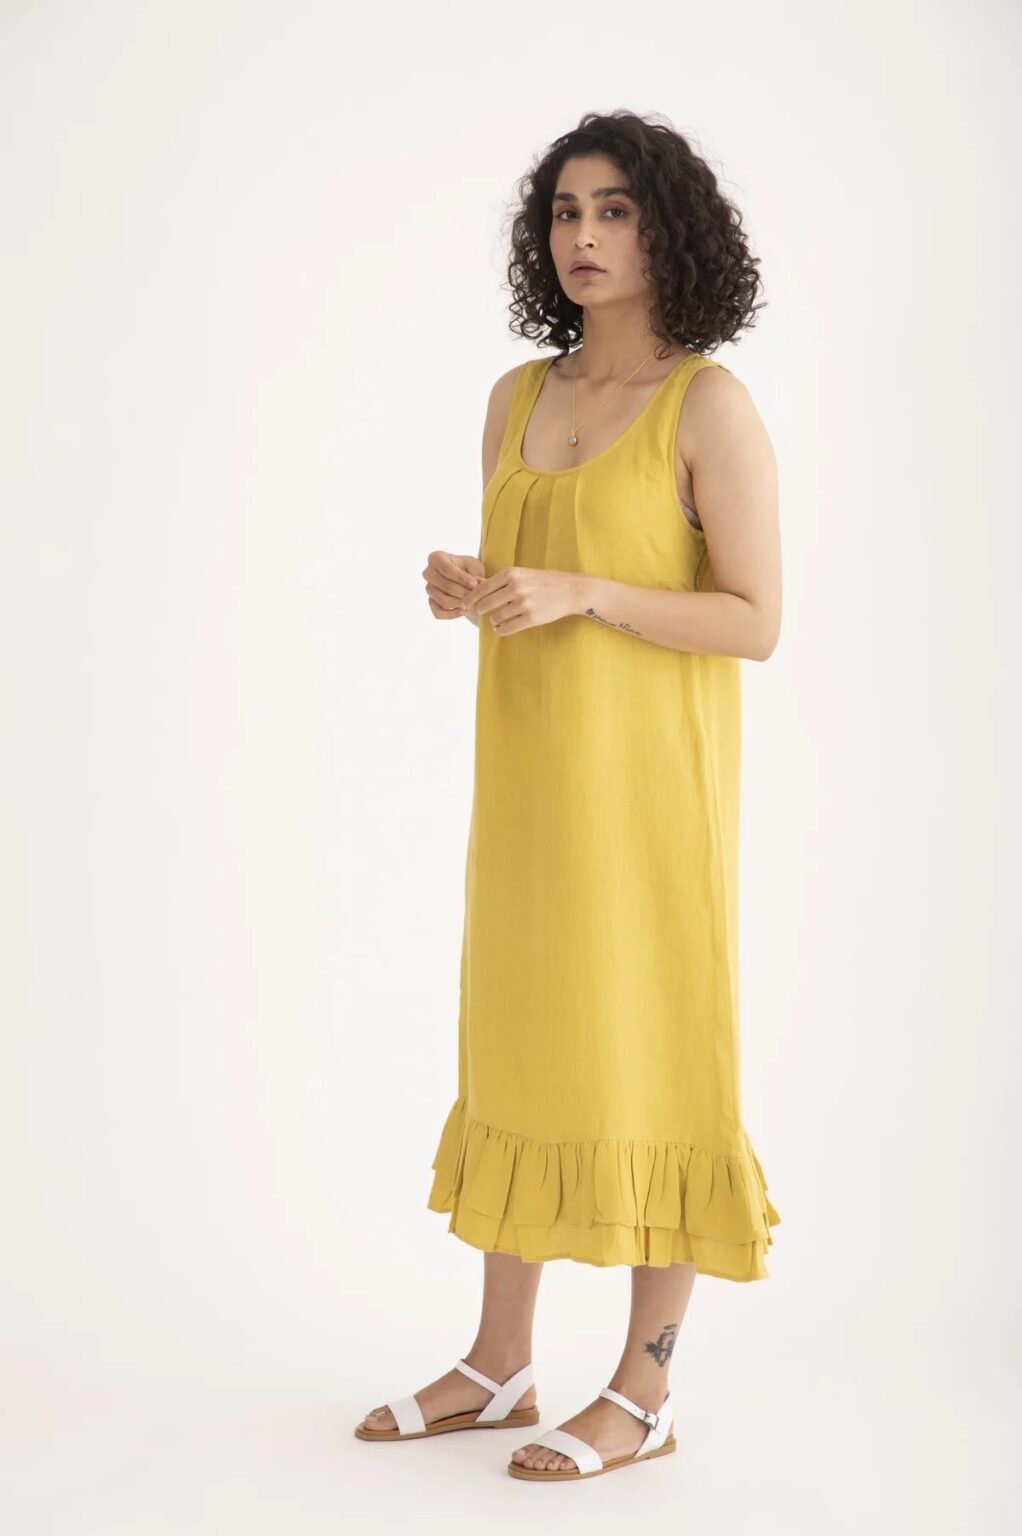 Buy Premium and 100% Pure Women's Linen Dresses Online